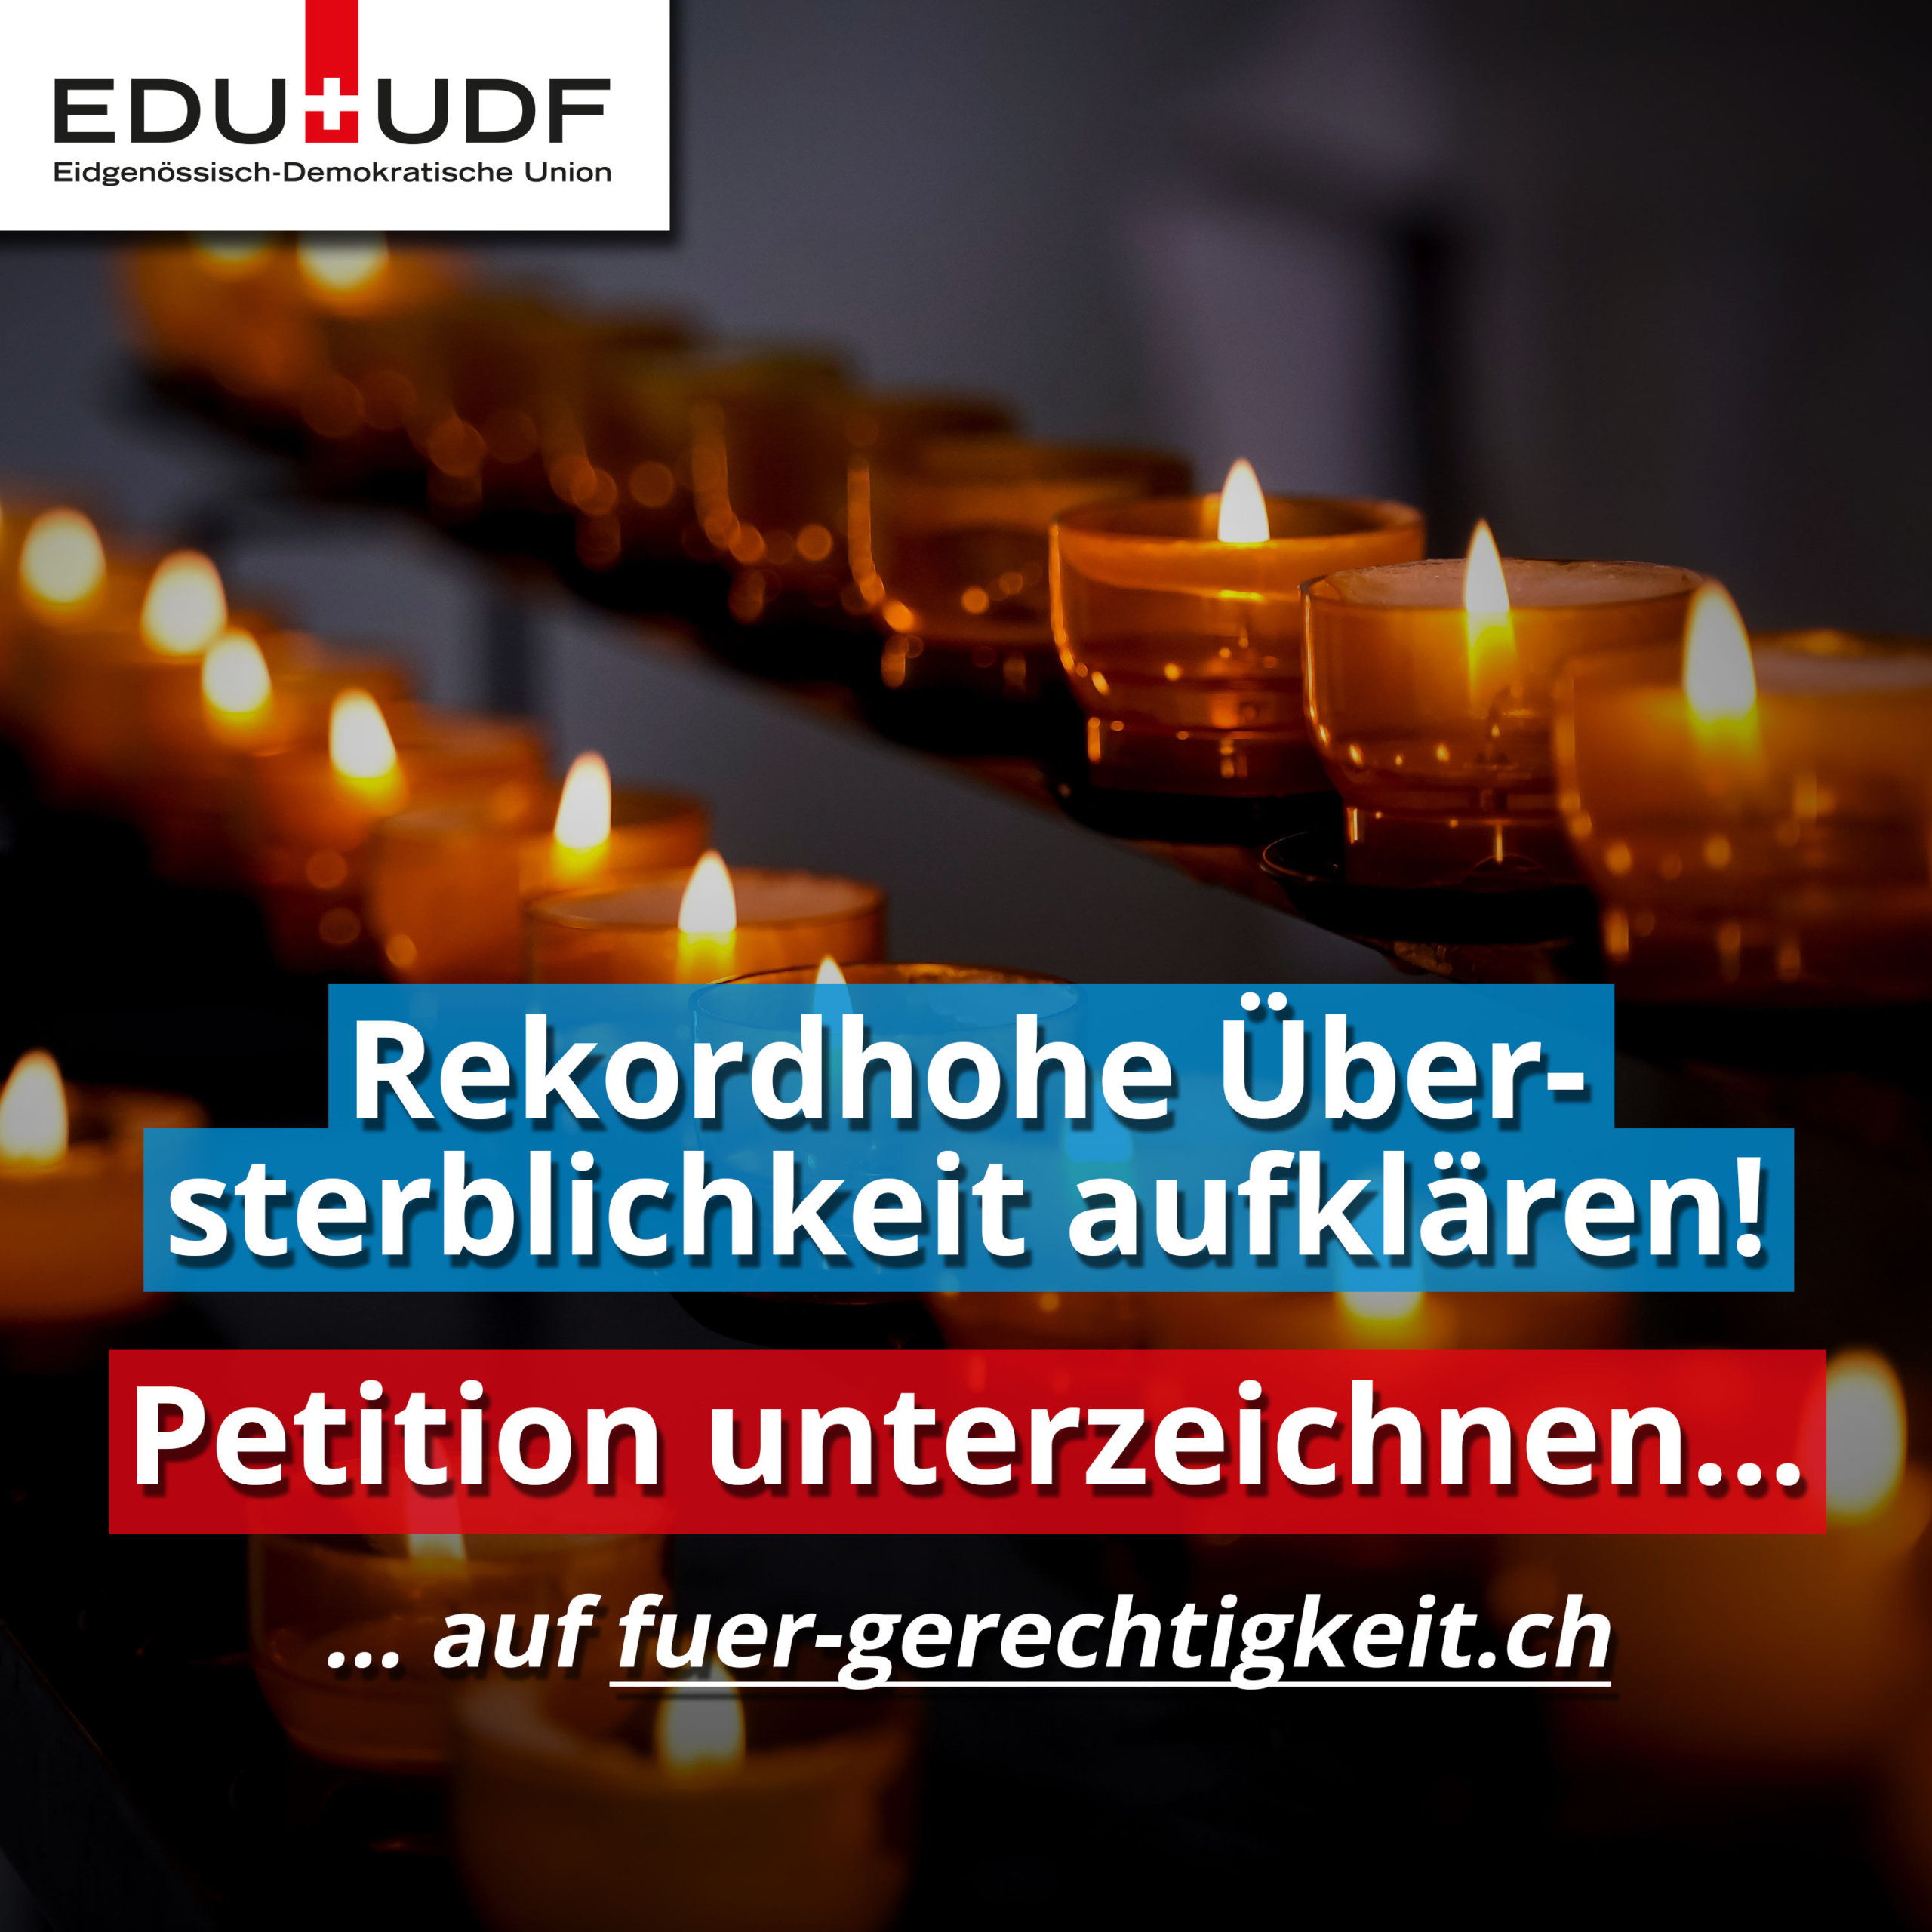 Eclaircir la surmortalité record! Signez la pétition sur fuer-gerechtigkeit.ch